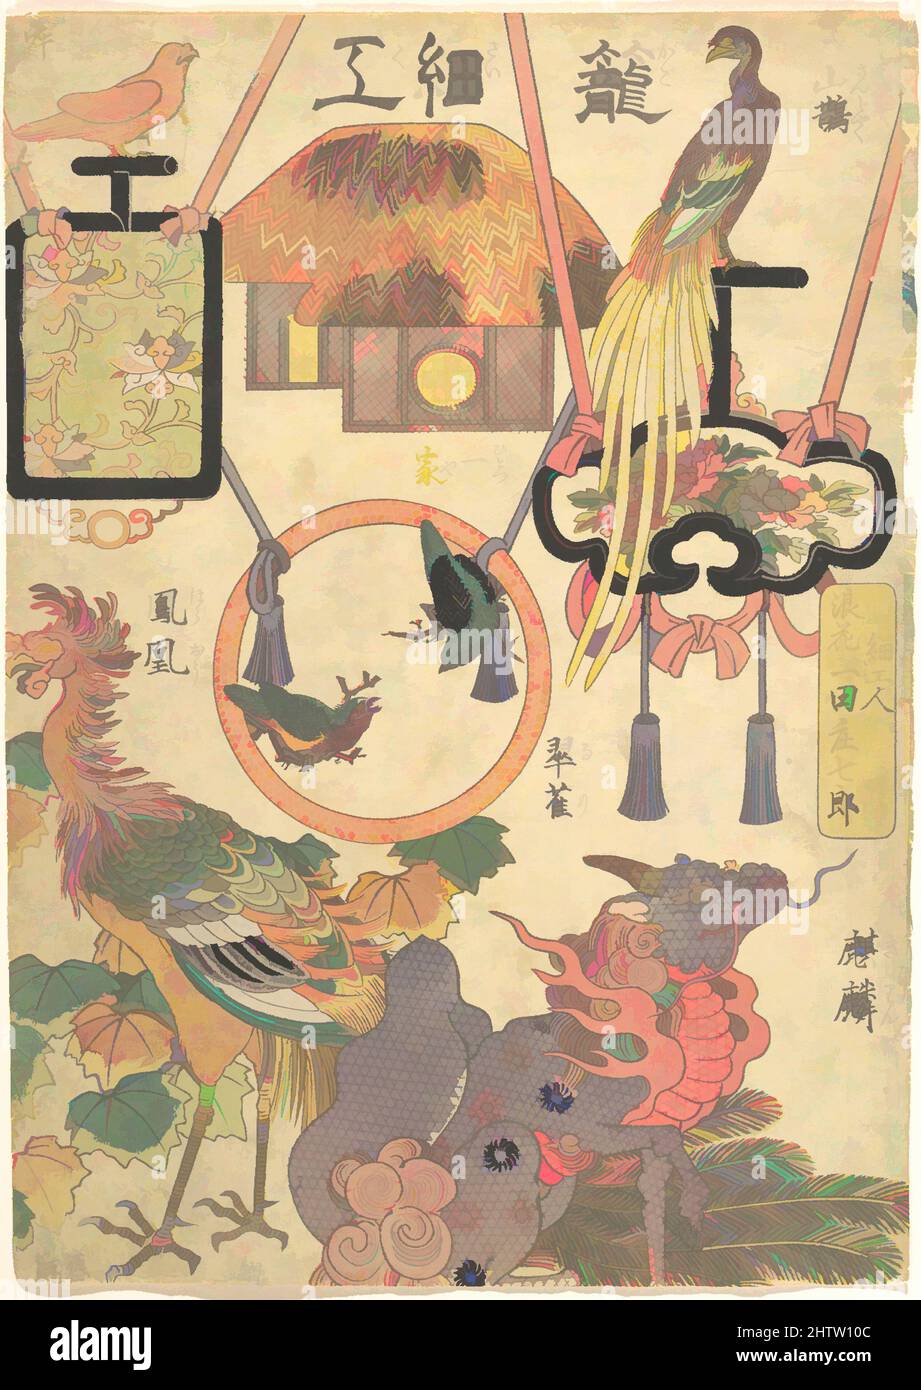 Art inspiré par l'œuvre de la vannerie: Par le Craftsman Ichida Shōshichirō de Naniwa (Kagosaiku Naniwa saikujin Ichida Shōshichirō), 「籠細工 浪花細工人一田庄七郎」, période Edo (1615–1868), 1819, Japon, Impression polychrome sur bois; encre et couleur sur papier, image: 13 1/2 × 9 1/2 po. (34,3 × 24,1 cm), tirages, oeuvres classiques modernisées par Artotop avec une touche de modernité. Formes, couleur et valeur, impact visuel accrocheur sur l'art émotions par la liberté d'œuvres d'art d'une manière contemporaine. Un message intemporel qui cherche une nouvelle direction créative. Artistes qui se tournent vers le support numérique et créent le NFT Artotop Banque D'Images